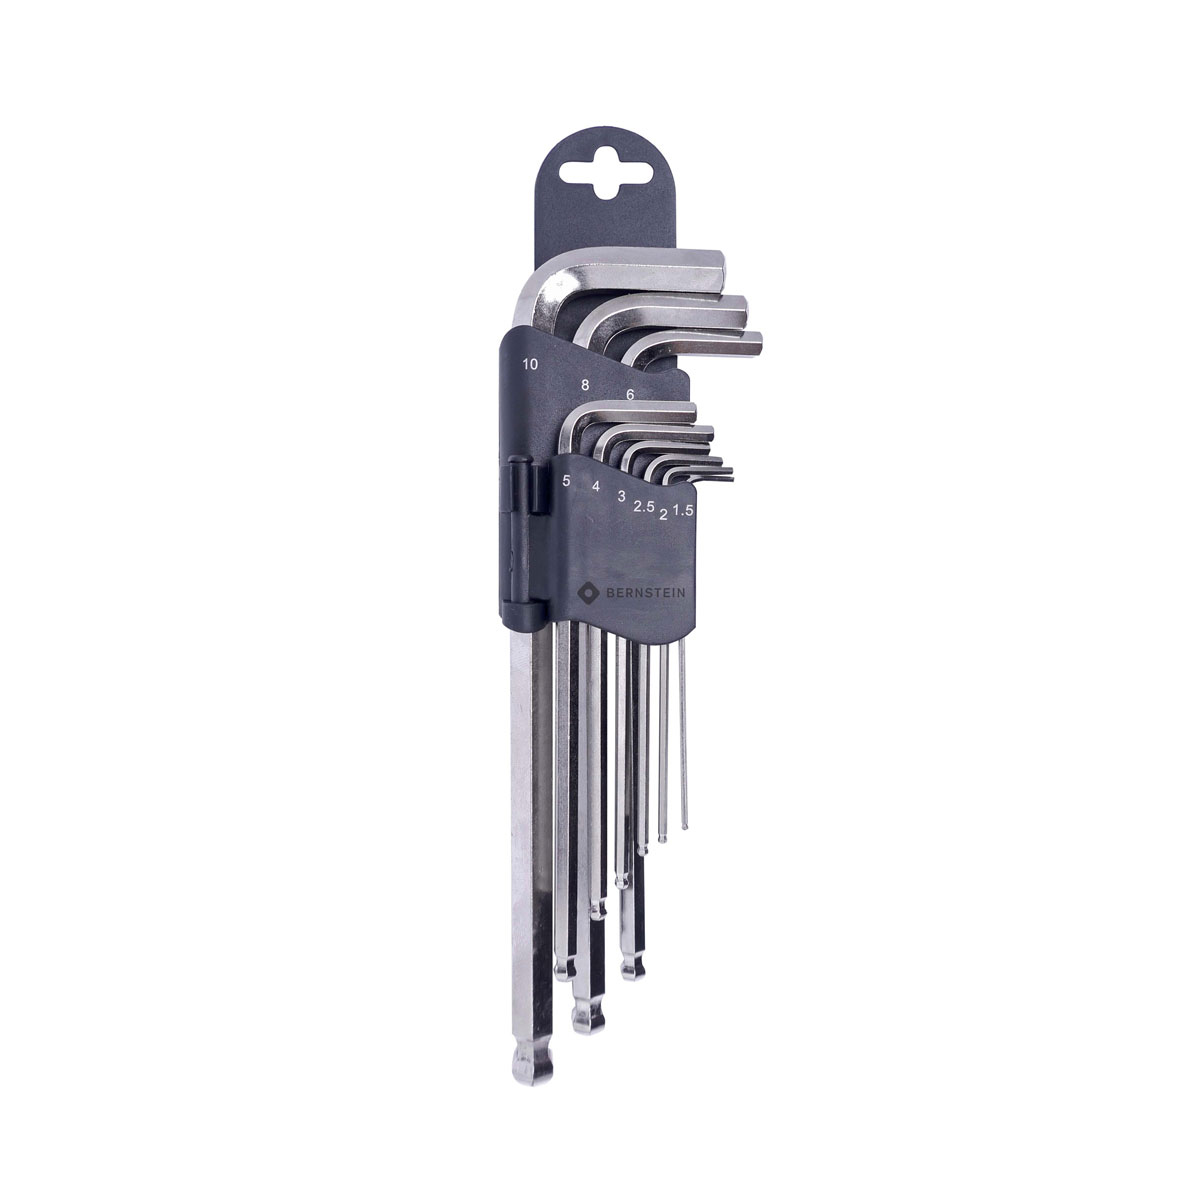 6 950 B00 Sechskant Stiftschluessel Inbus Set Wrench Keys